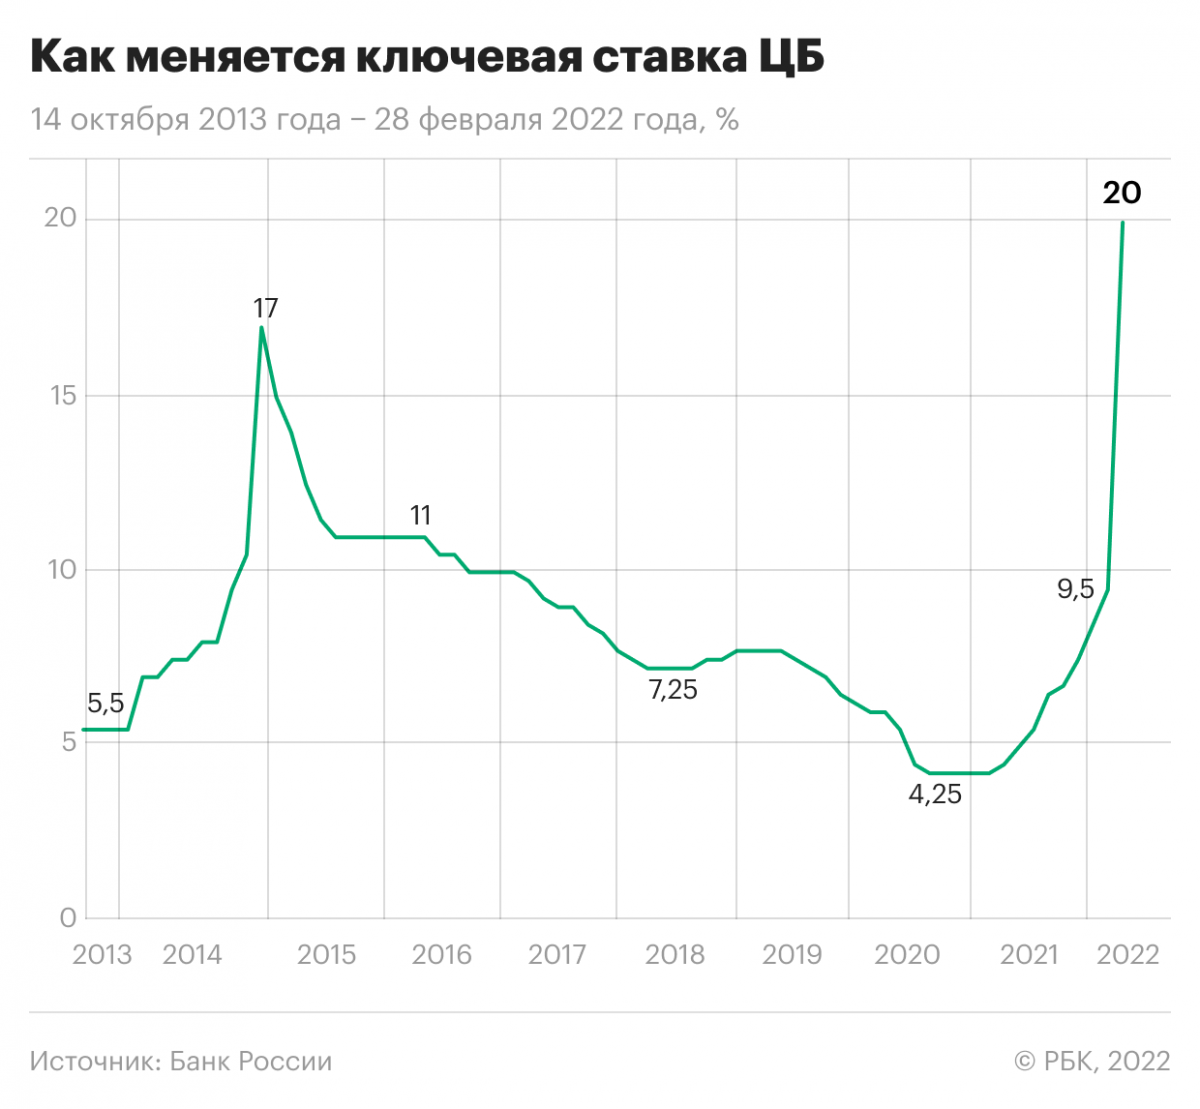 Изменение ключевой ставки Центробанка России 14 октября 2013 года — 28 февраля 2022 года
 